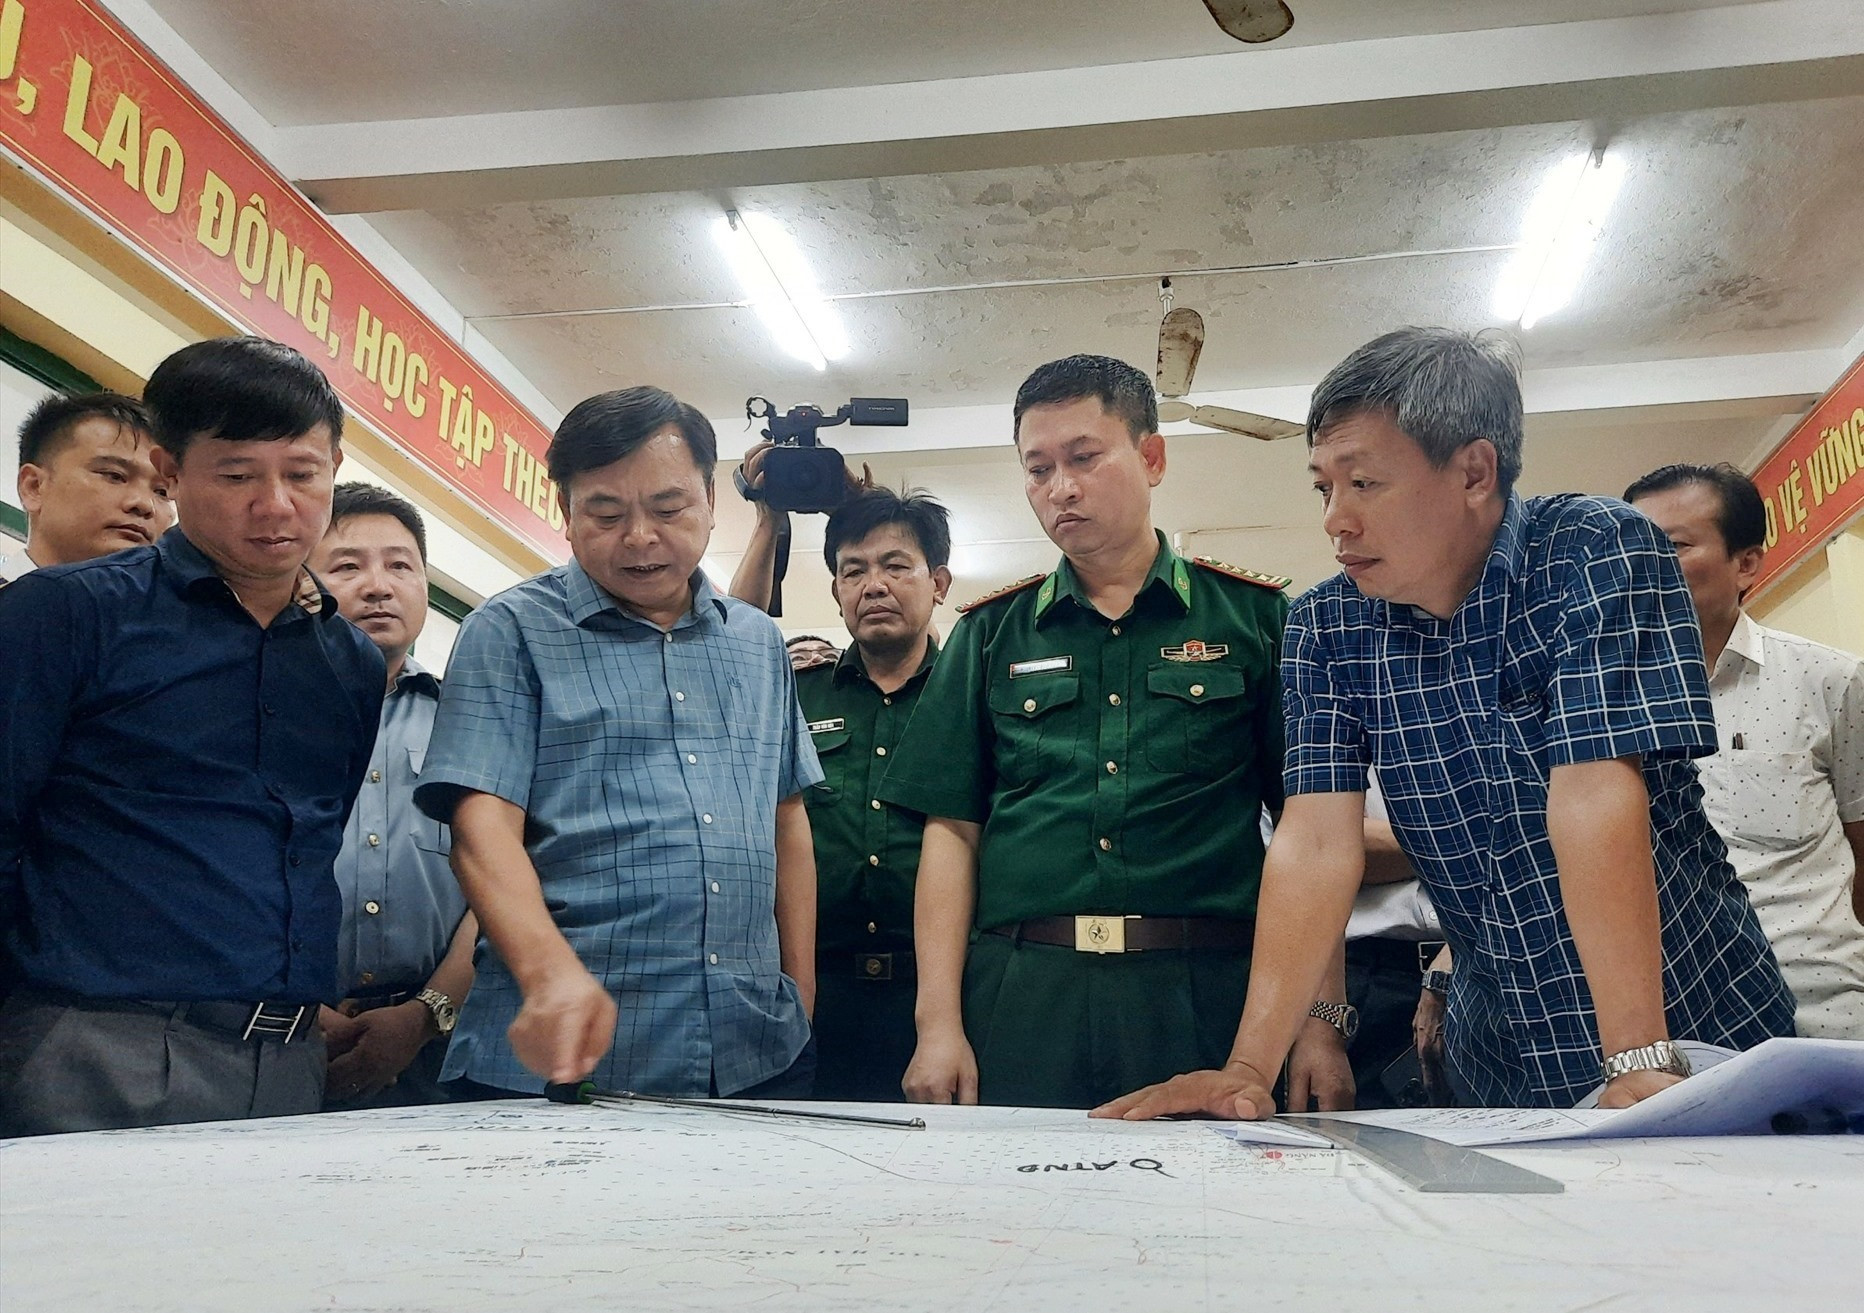 Thứ trưởng Nguyễn Hoàng Hiệp yêu cầu Quảng Nam phải phối hợp chặt chẽ với các lực lượng cứu hộ, cứu nạn trên biển để có thể cứu được 13 ngư dân còn mất tích. Ảnh: Đ.C